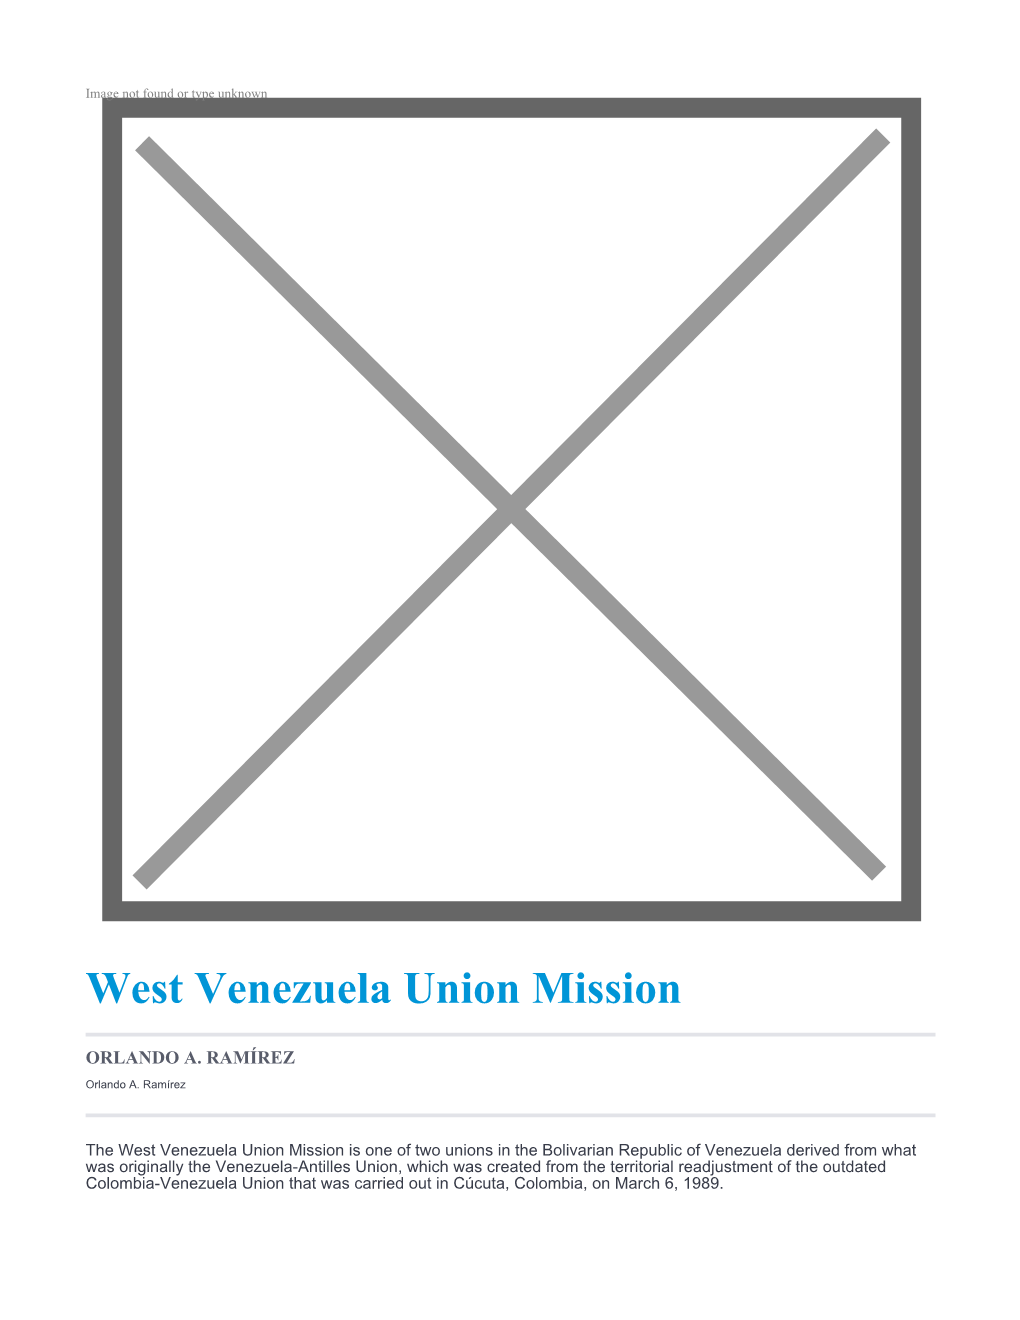 West Venezuela Union Mission